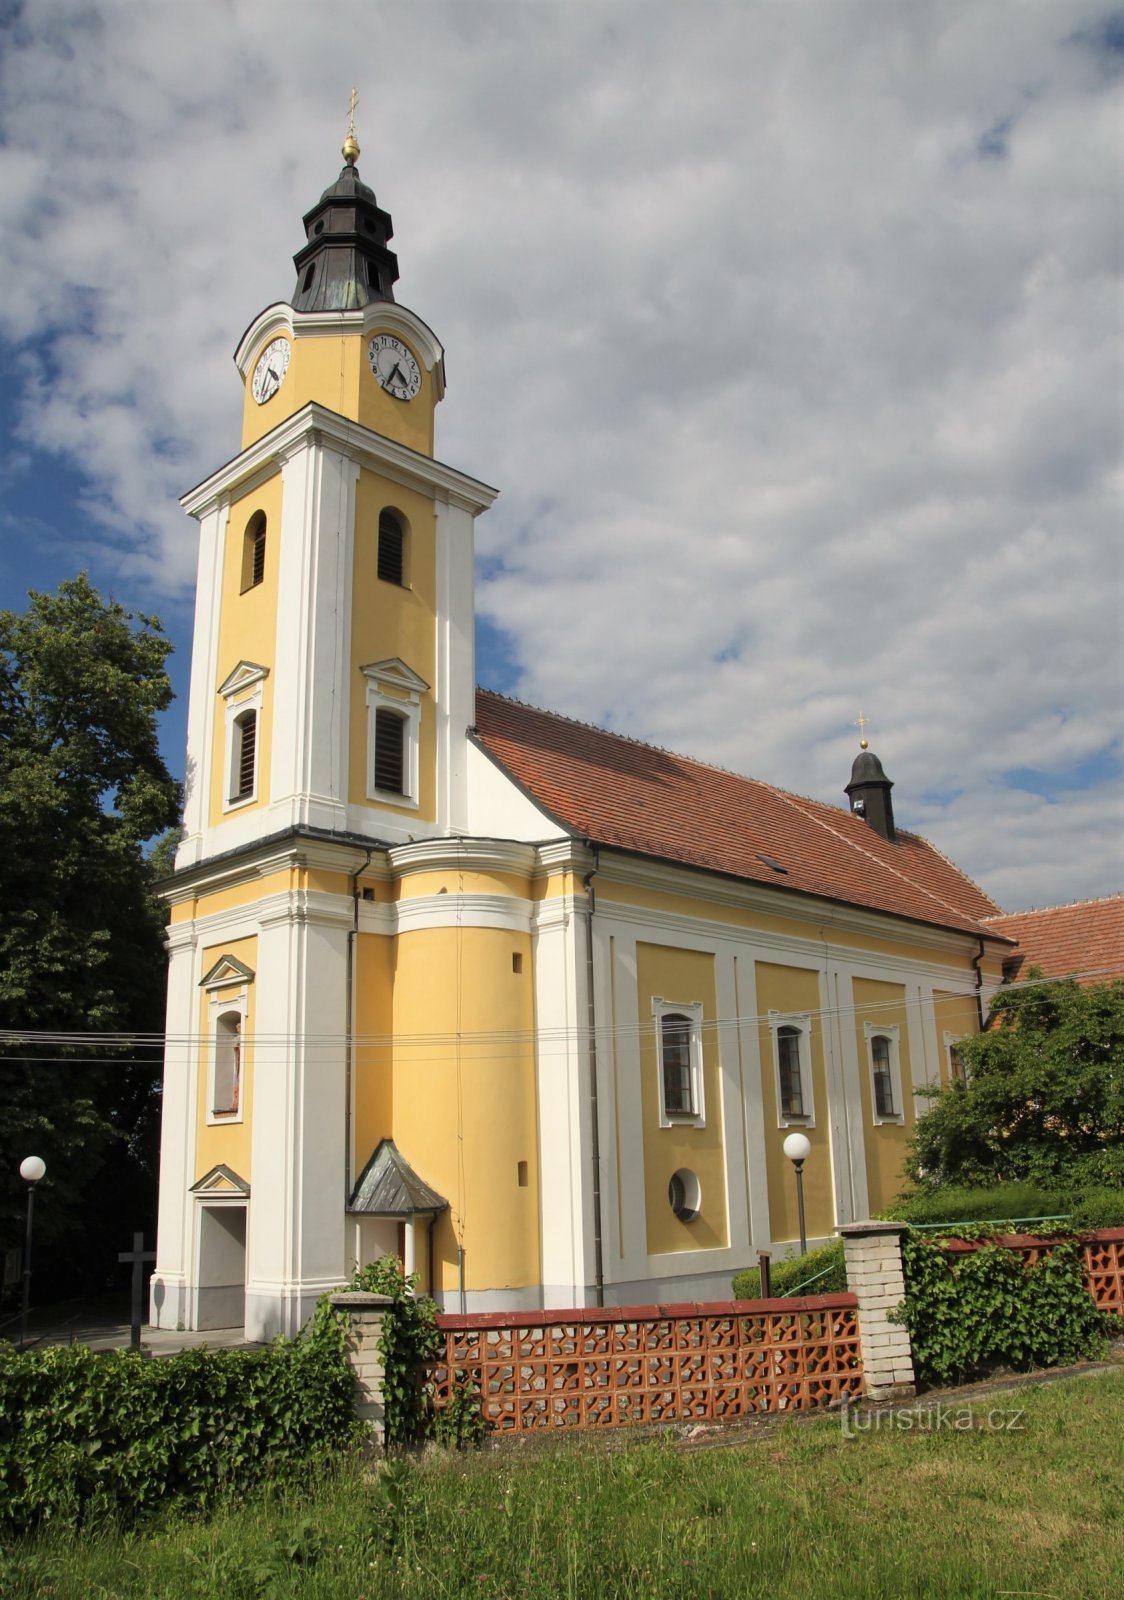 Mutěnice - crkva sv. Catherine